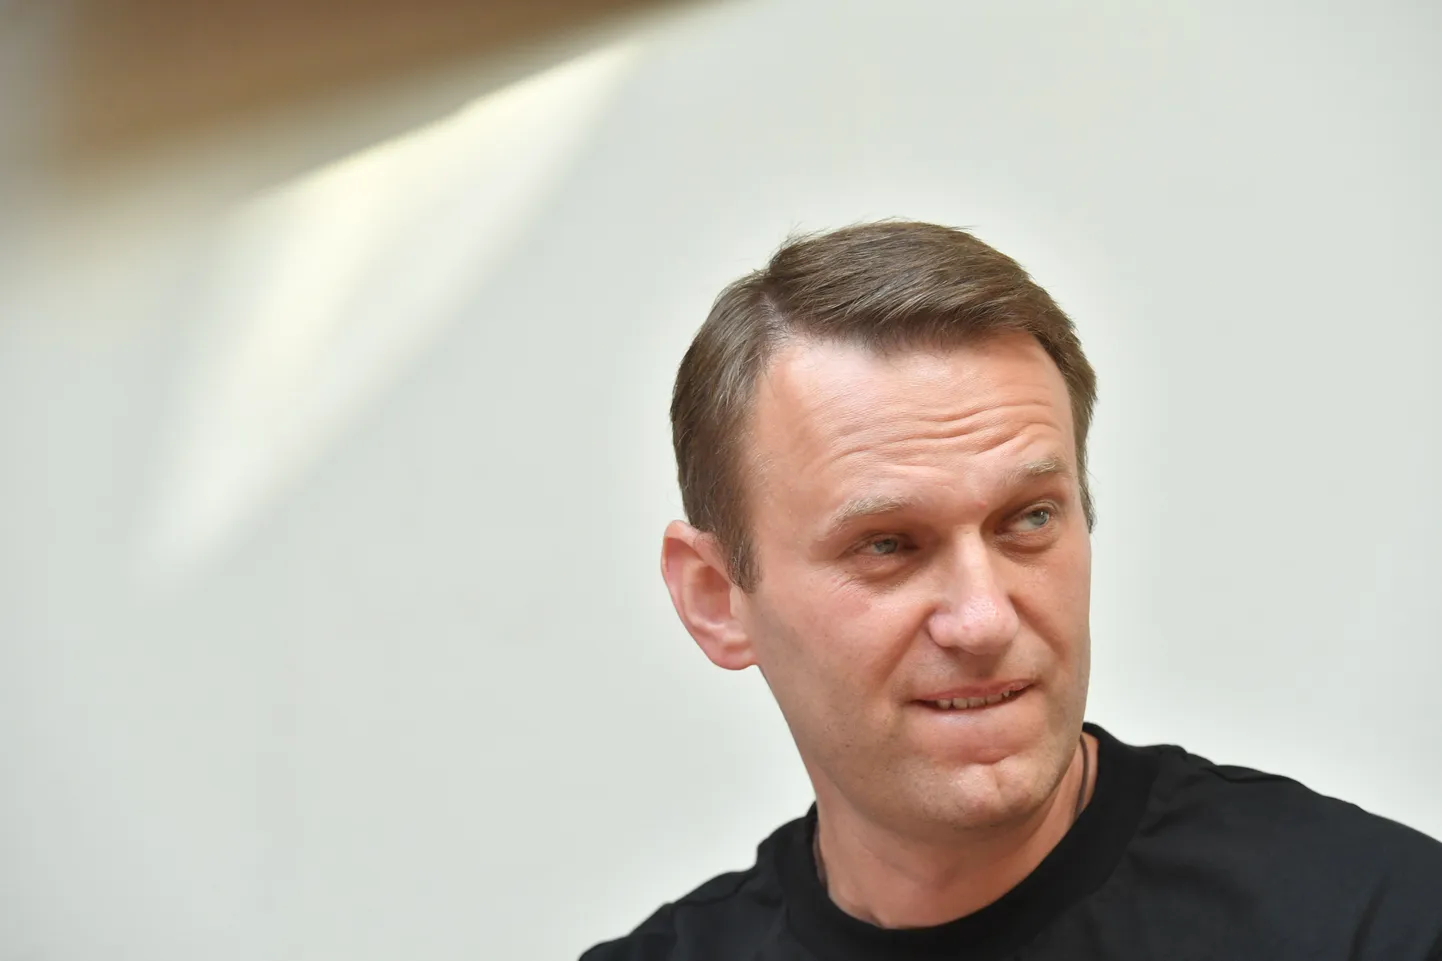 Kuigi Navalnõi on presidendikandidaadina välja kuulutatud, teatasid Vene valimisametnikud juunis, et ta ei saa viie aasta pikkuse tingimisi karistuse tõttu presidendiks kandideerida.